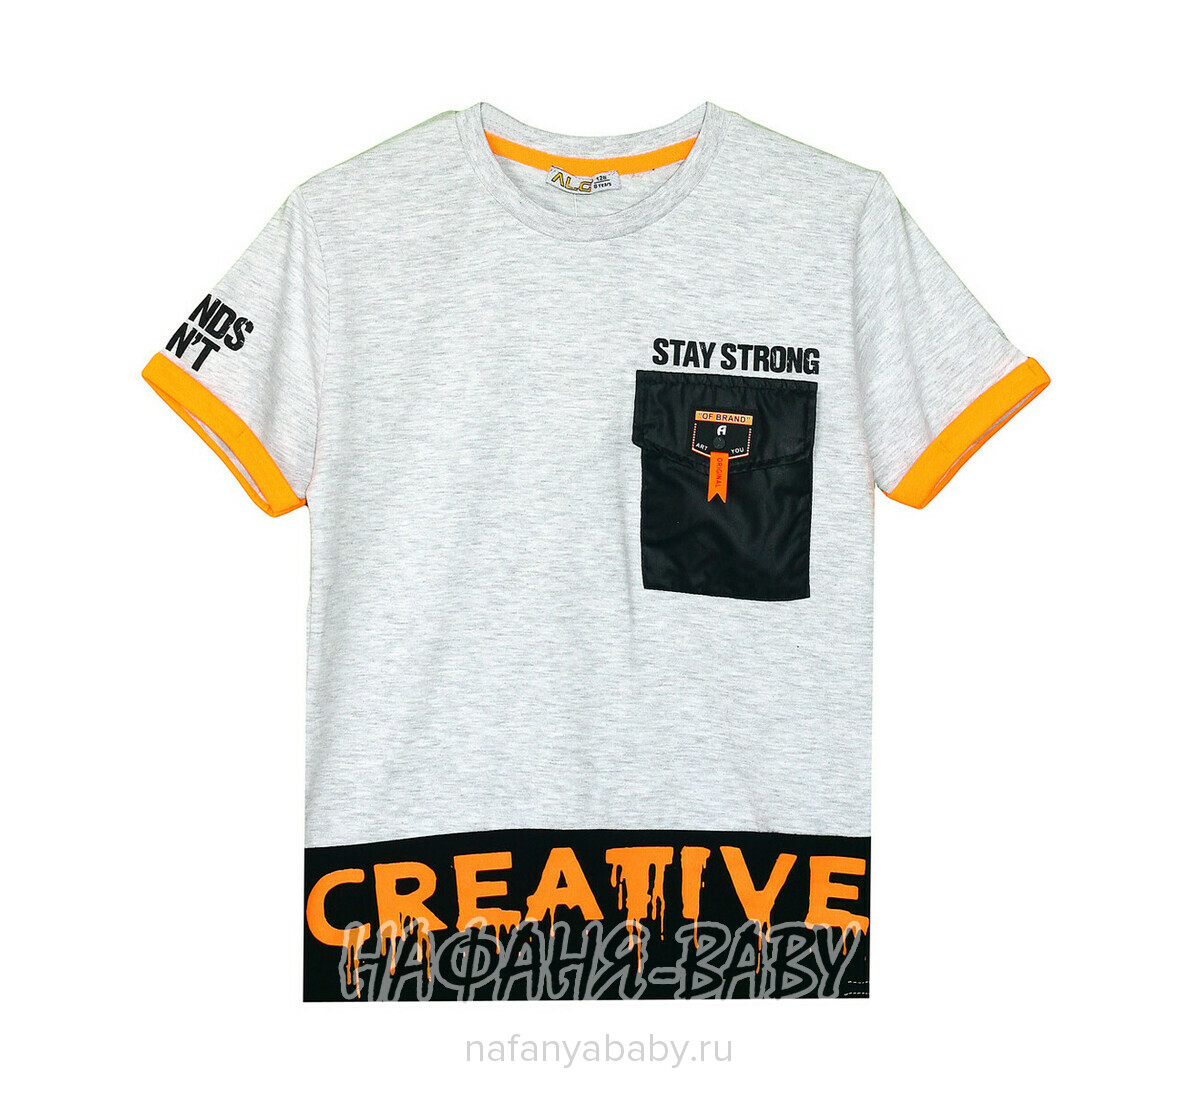 Подростковая футболка ALG, купить в интернет магазине Нафаня. арт: 322719 цвет серый меланж